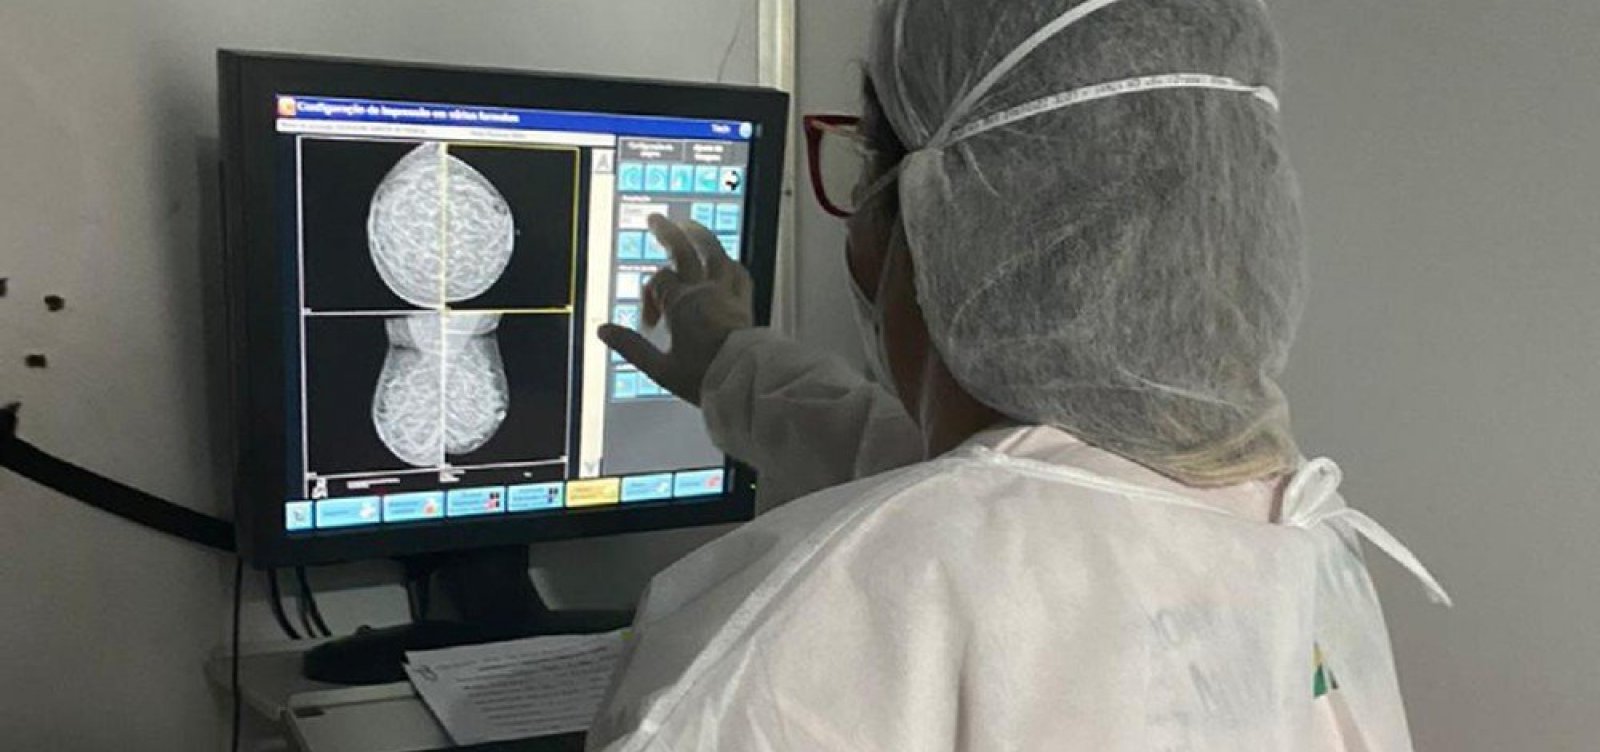 Exames de mamografia e oftalmologia serão oferecidos de forma gratuita em Salvador